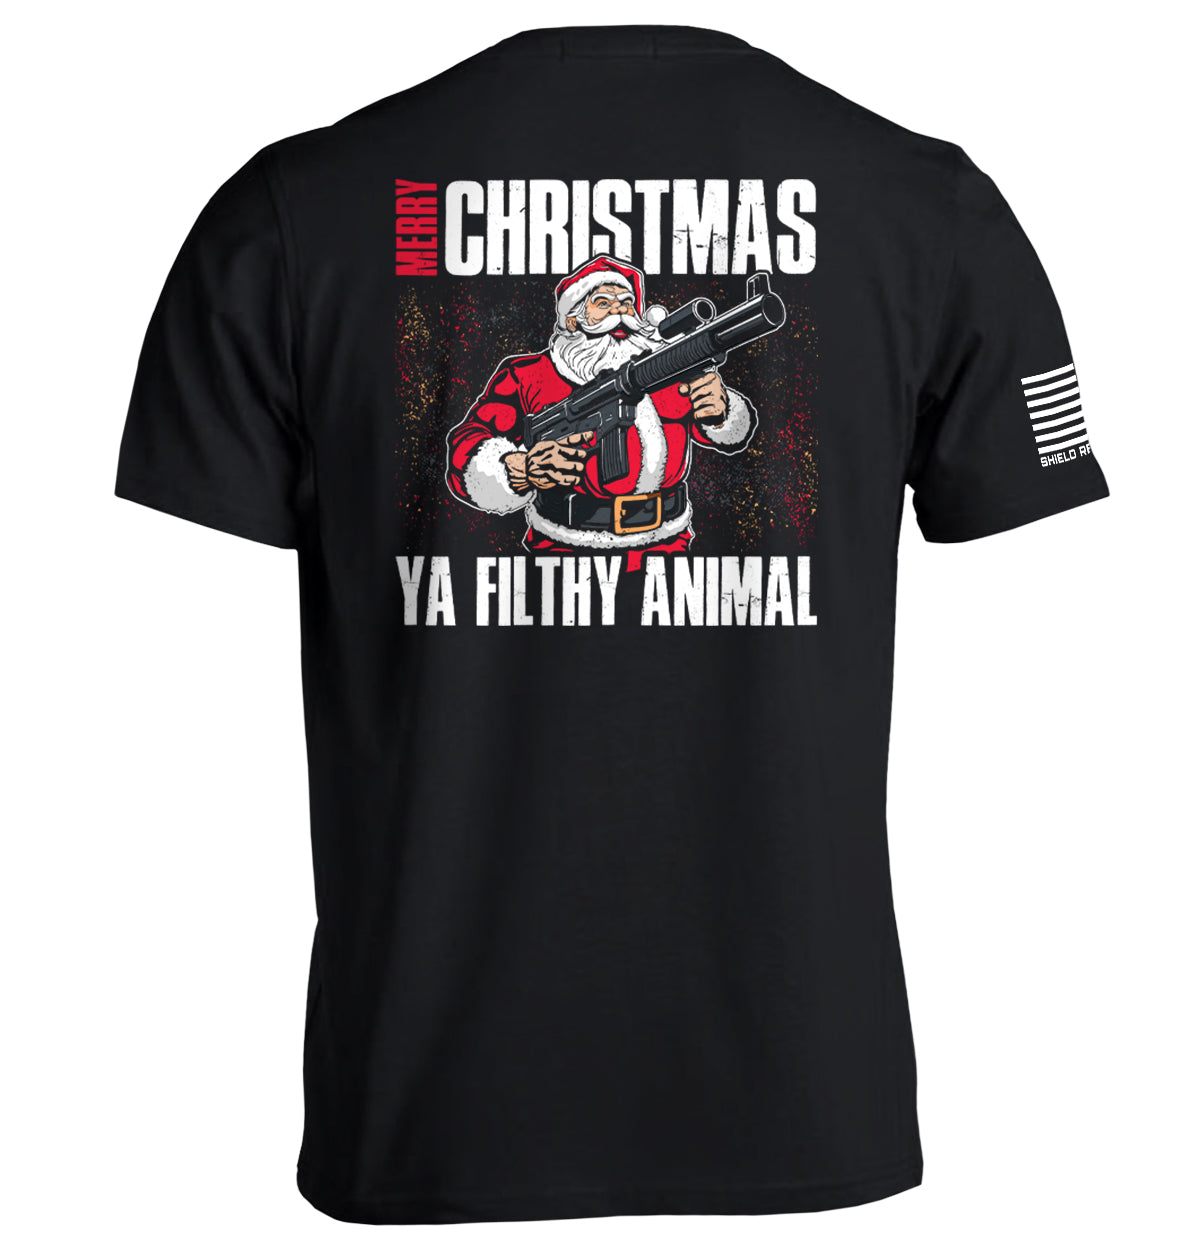 Merry Christmas you Filthy Animal